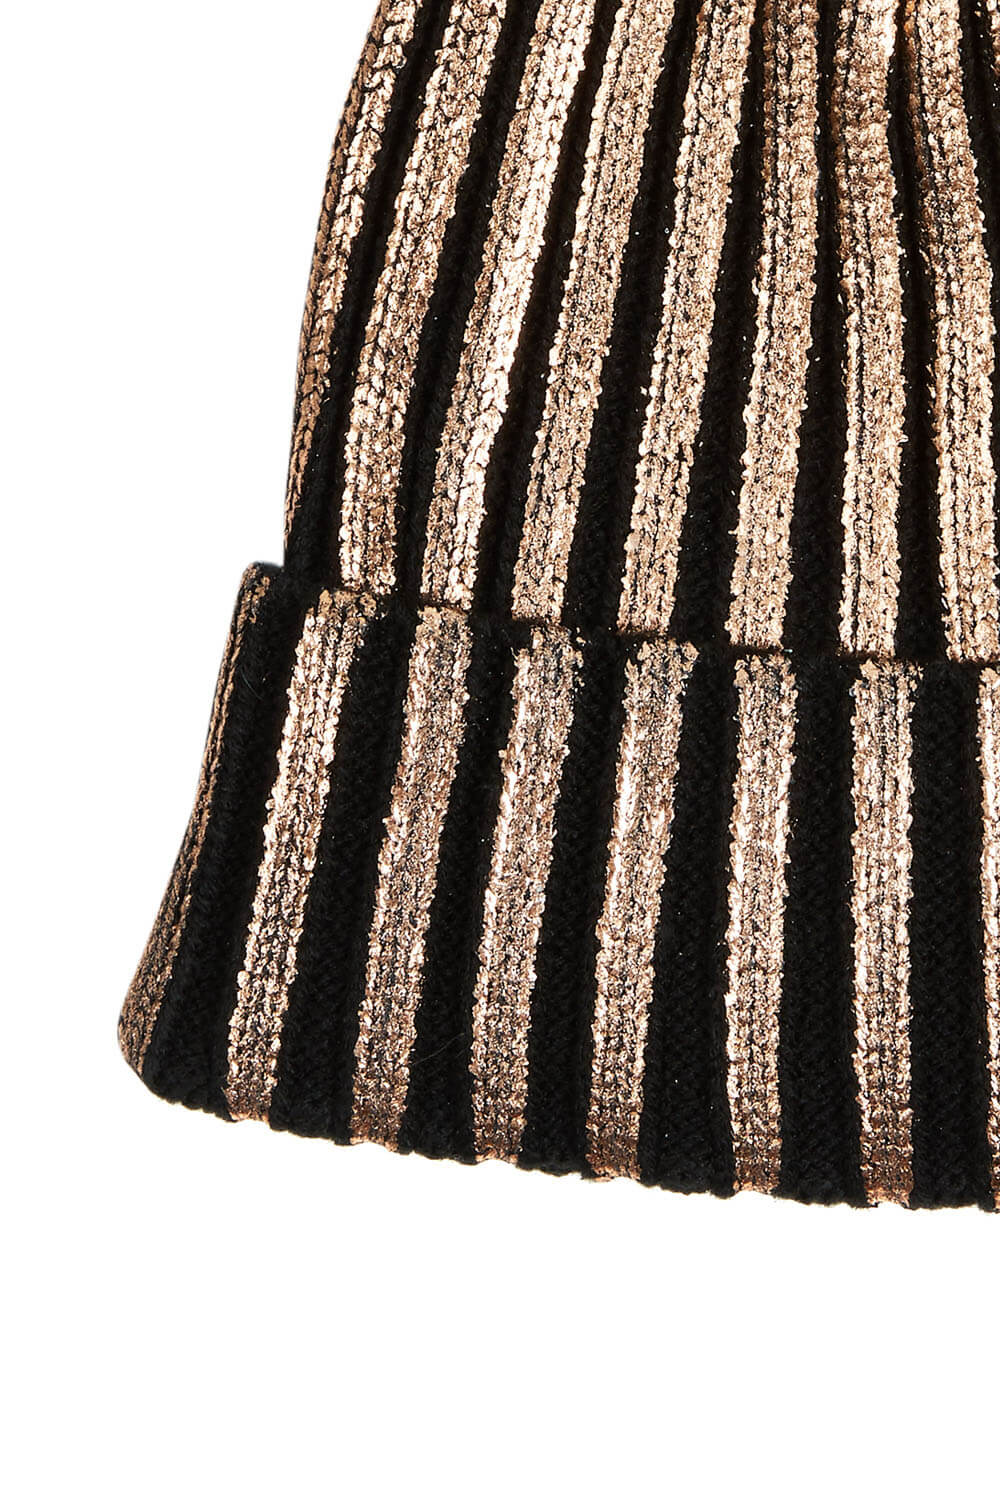 Rose Gold Foil Stripe Printed Bobble Hat, Image 3 of 3